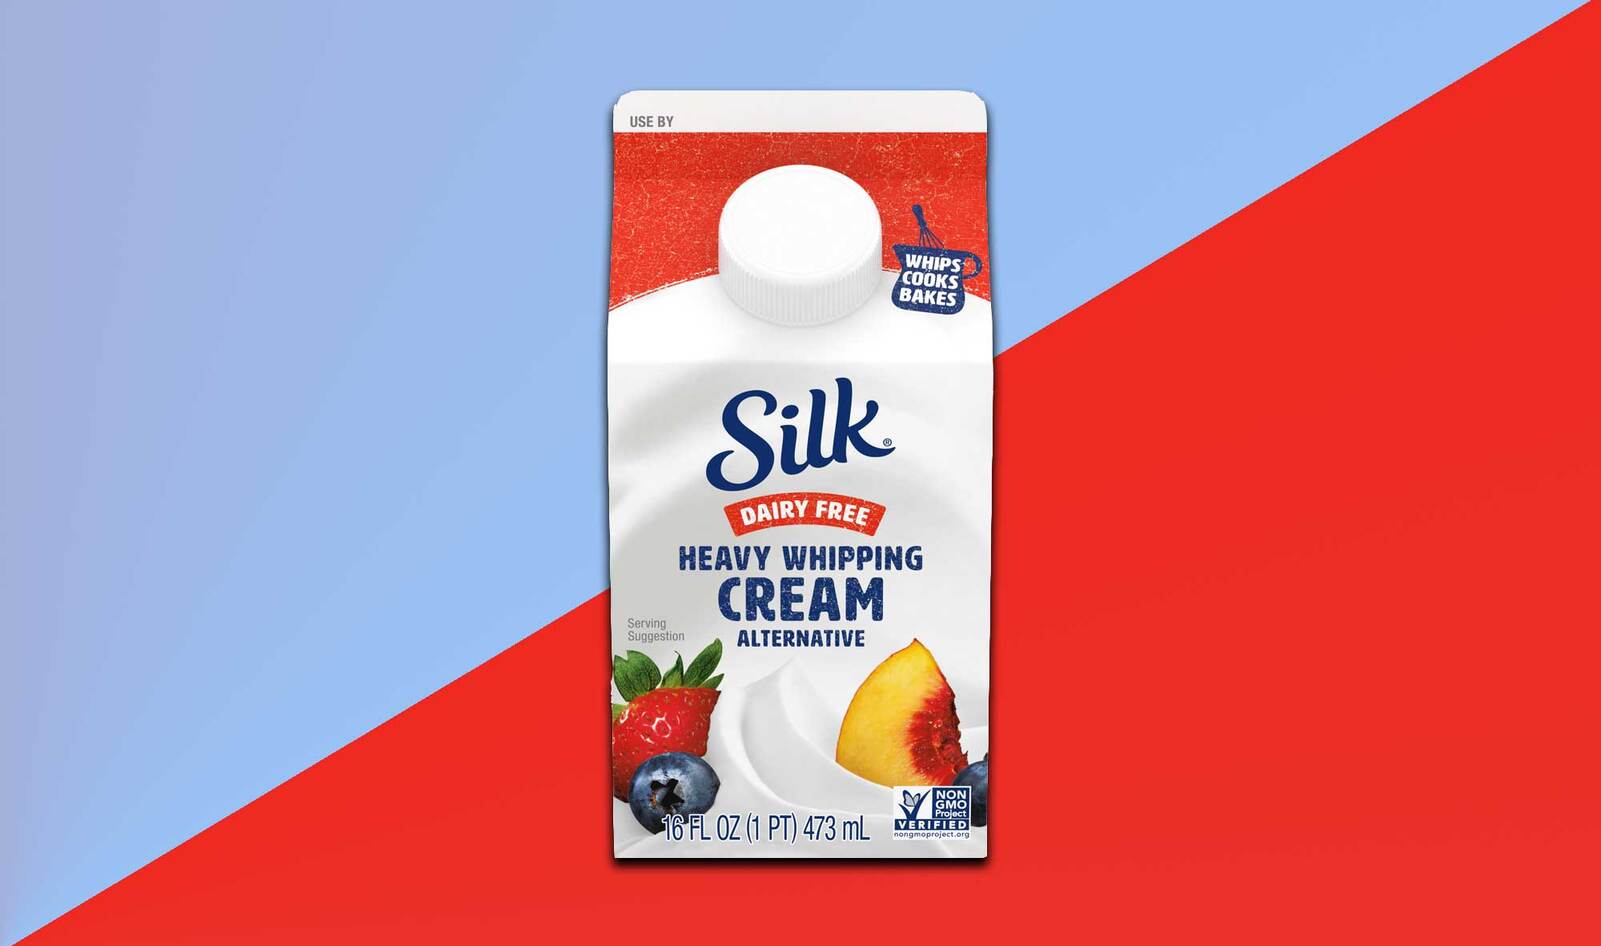 Silk Debuts Vegan Whipping Cream at Walmart